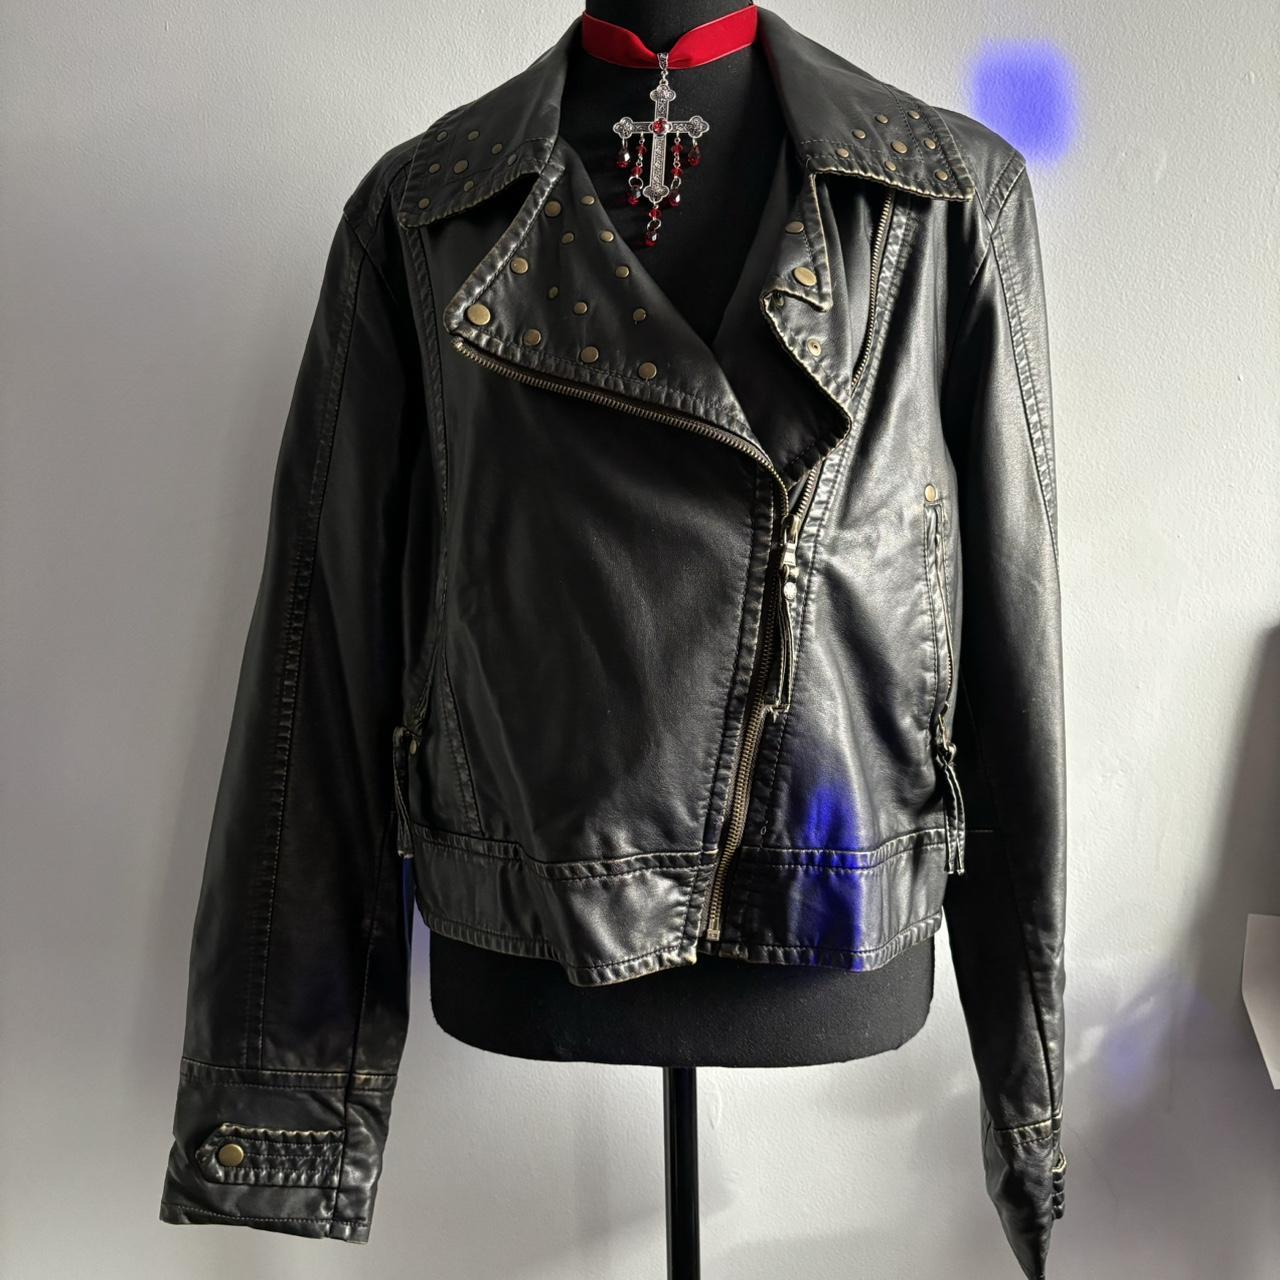 Faded Faux Leather Jacket Size L/XL (Jacket is... - Depop